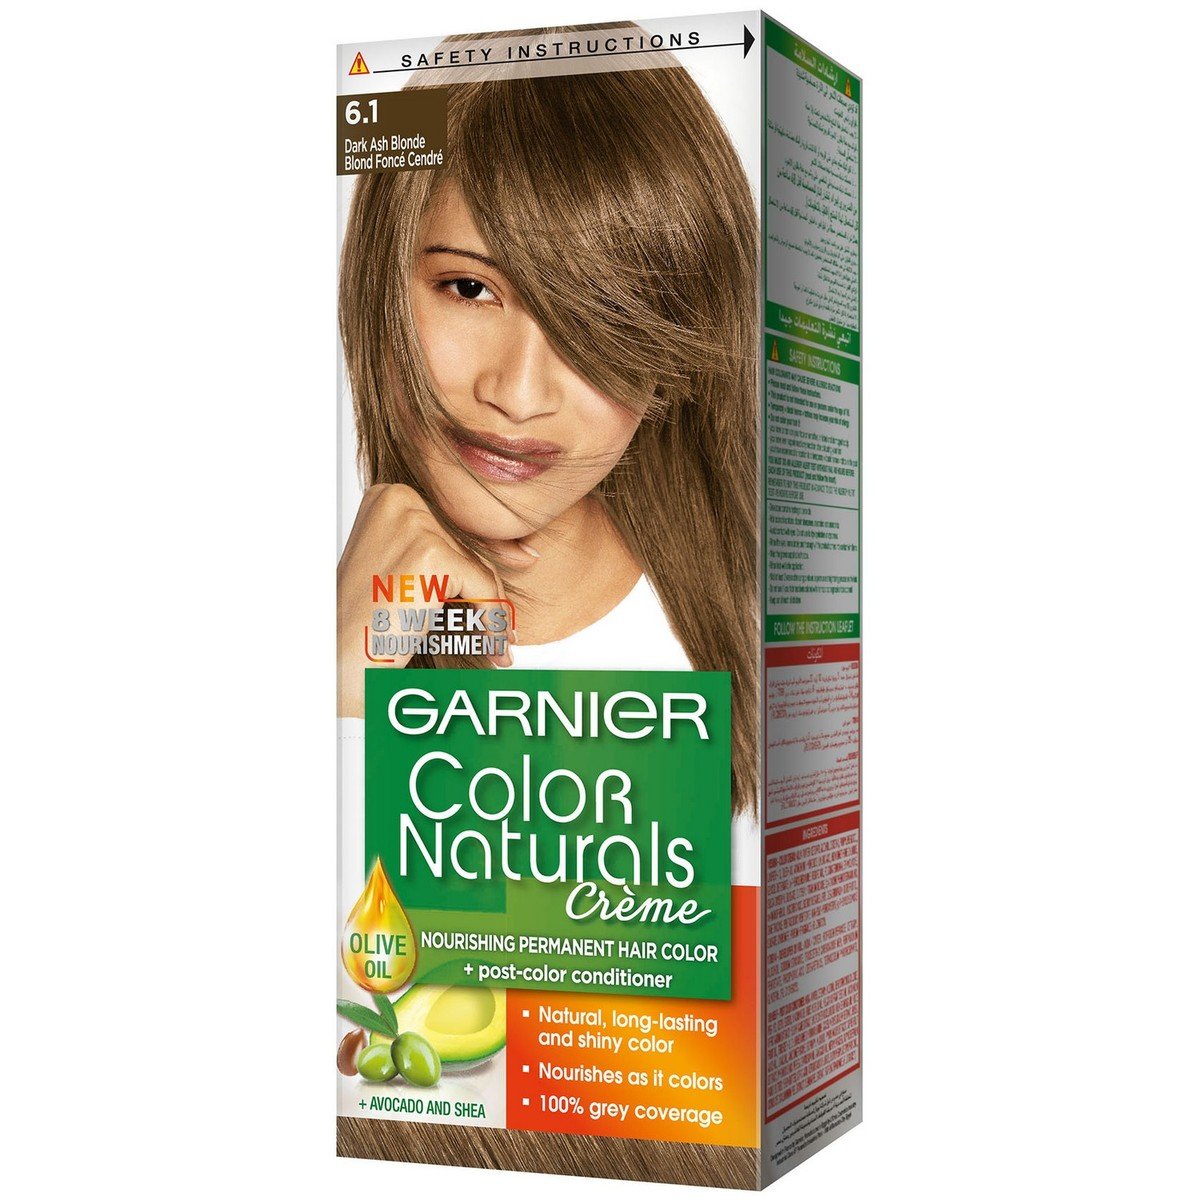 Garnier Naturals 6.11 Dark Ash Blonde 1pkt